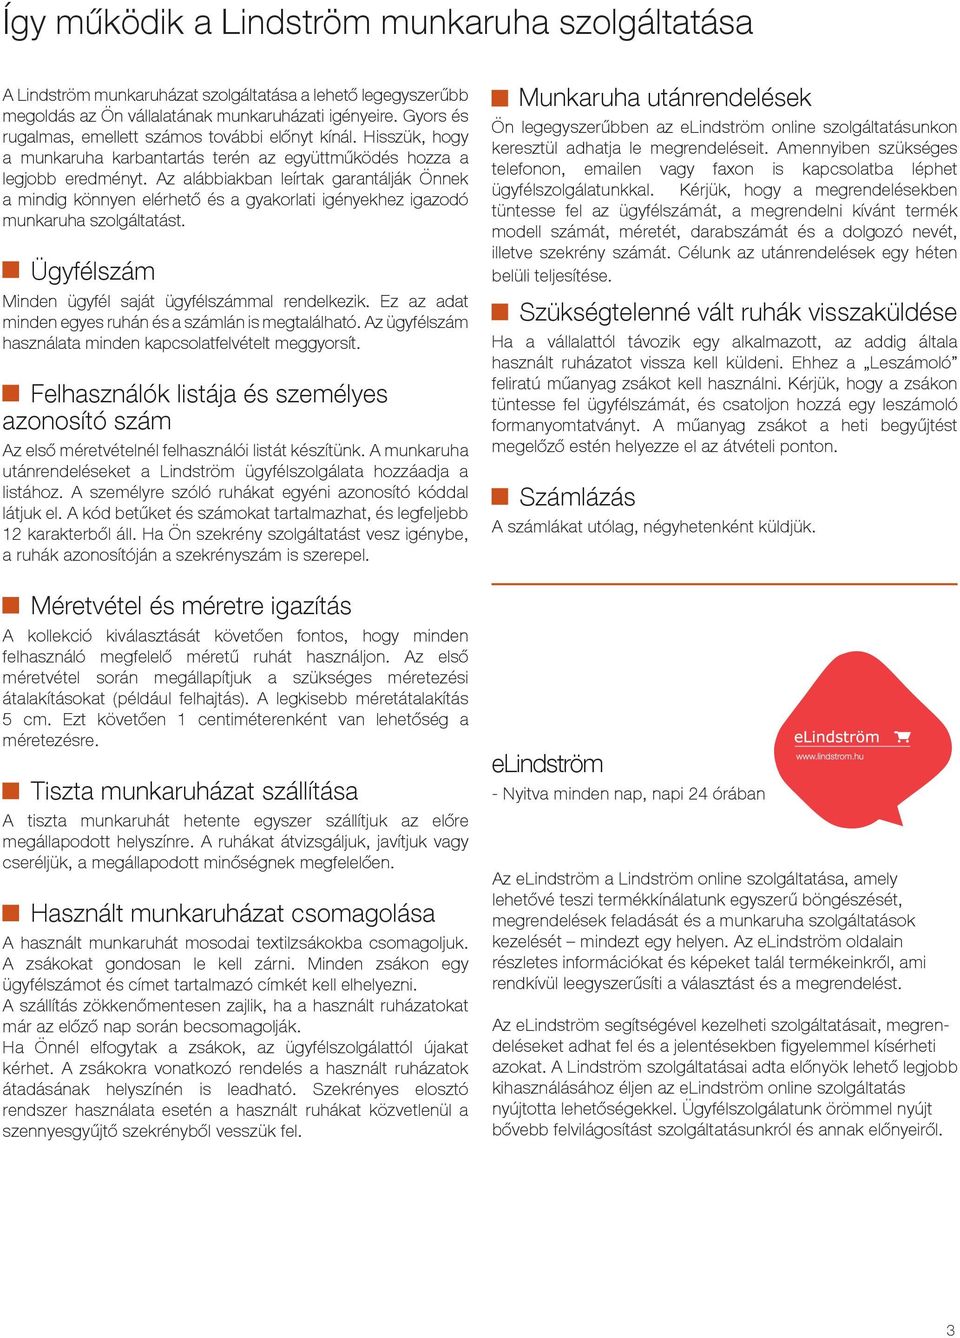 Munkaruházati szolgáltatások - PDF Ingyenes letöltés